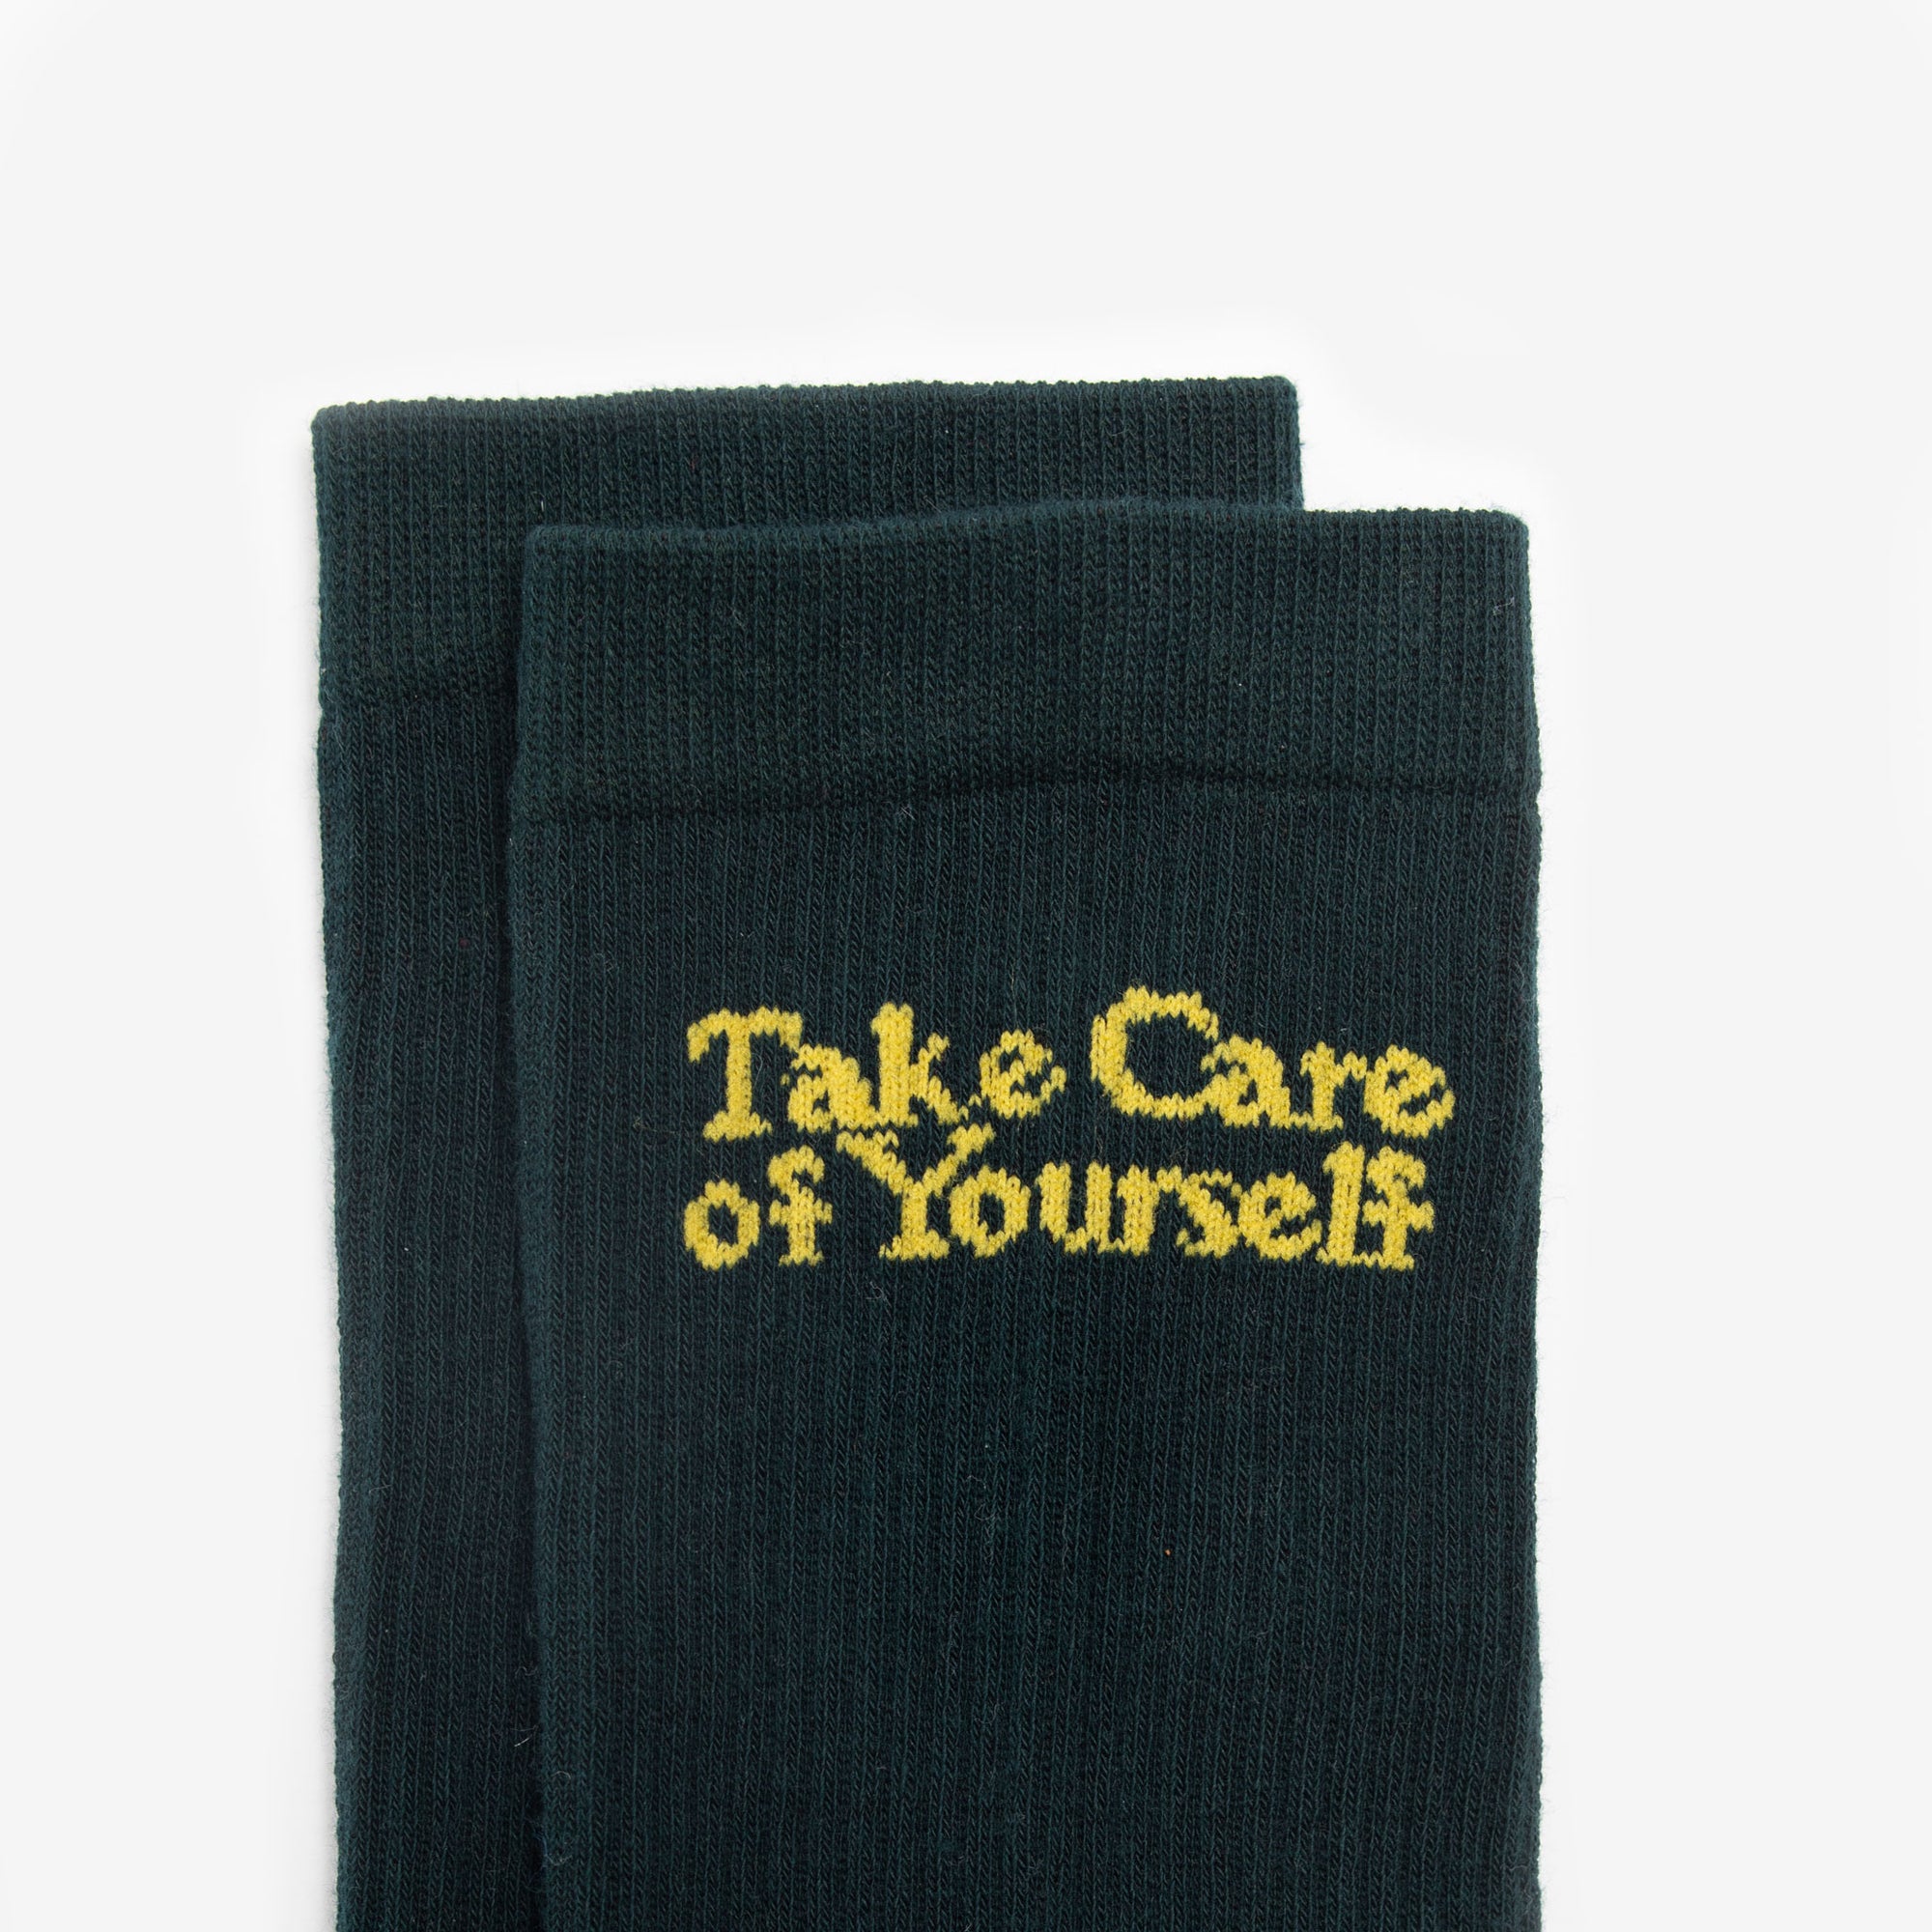 The Take Care Crew Sock in Dark Green